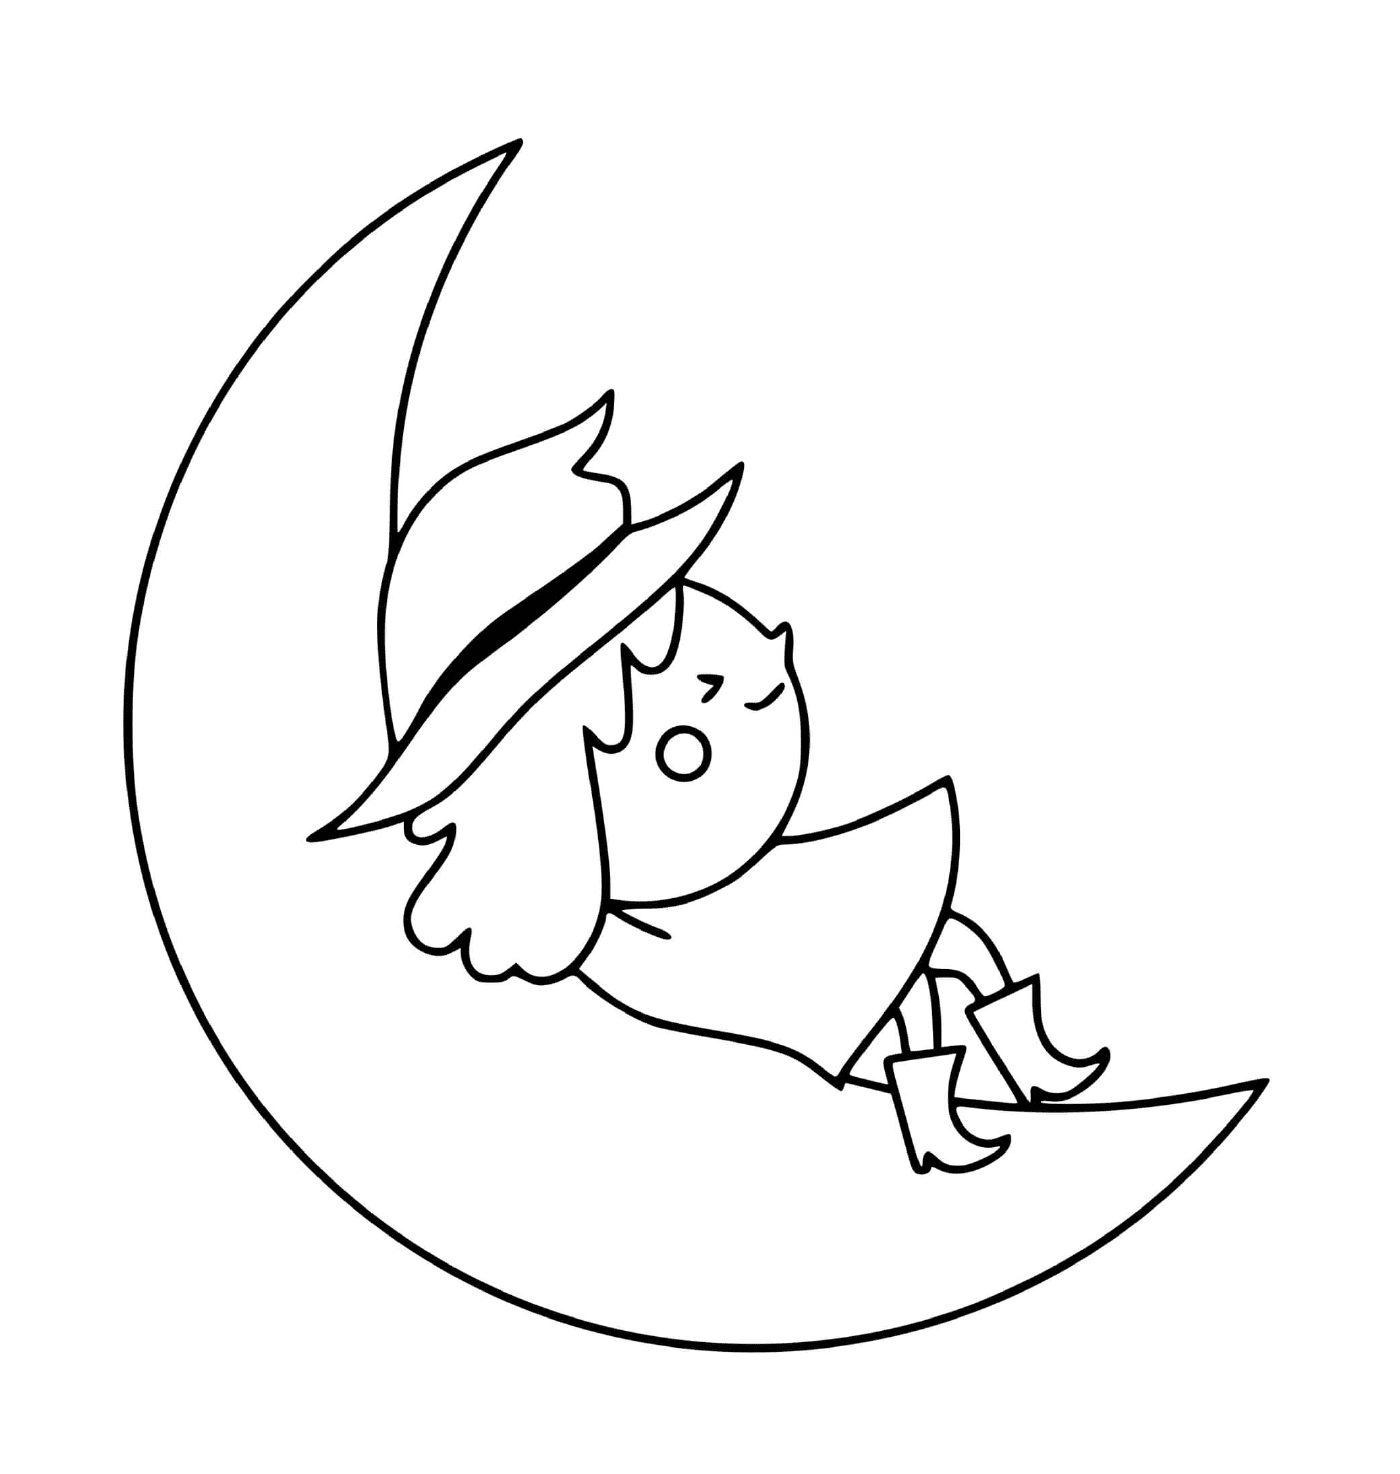  Bruja descansa en la luna 